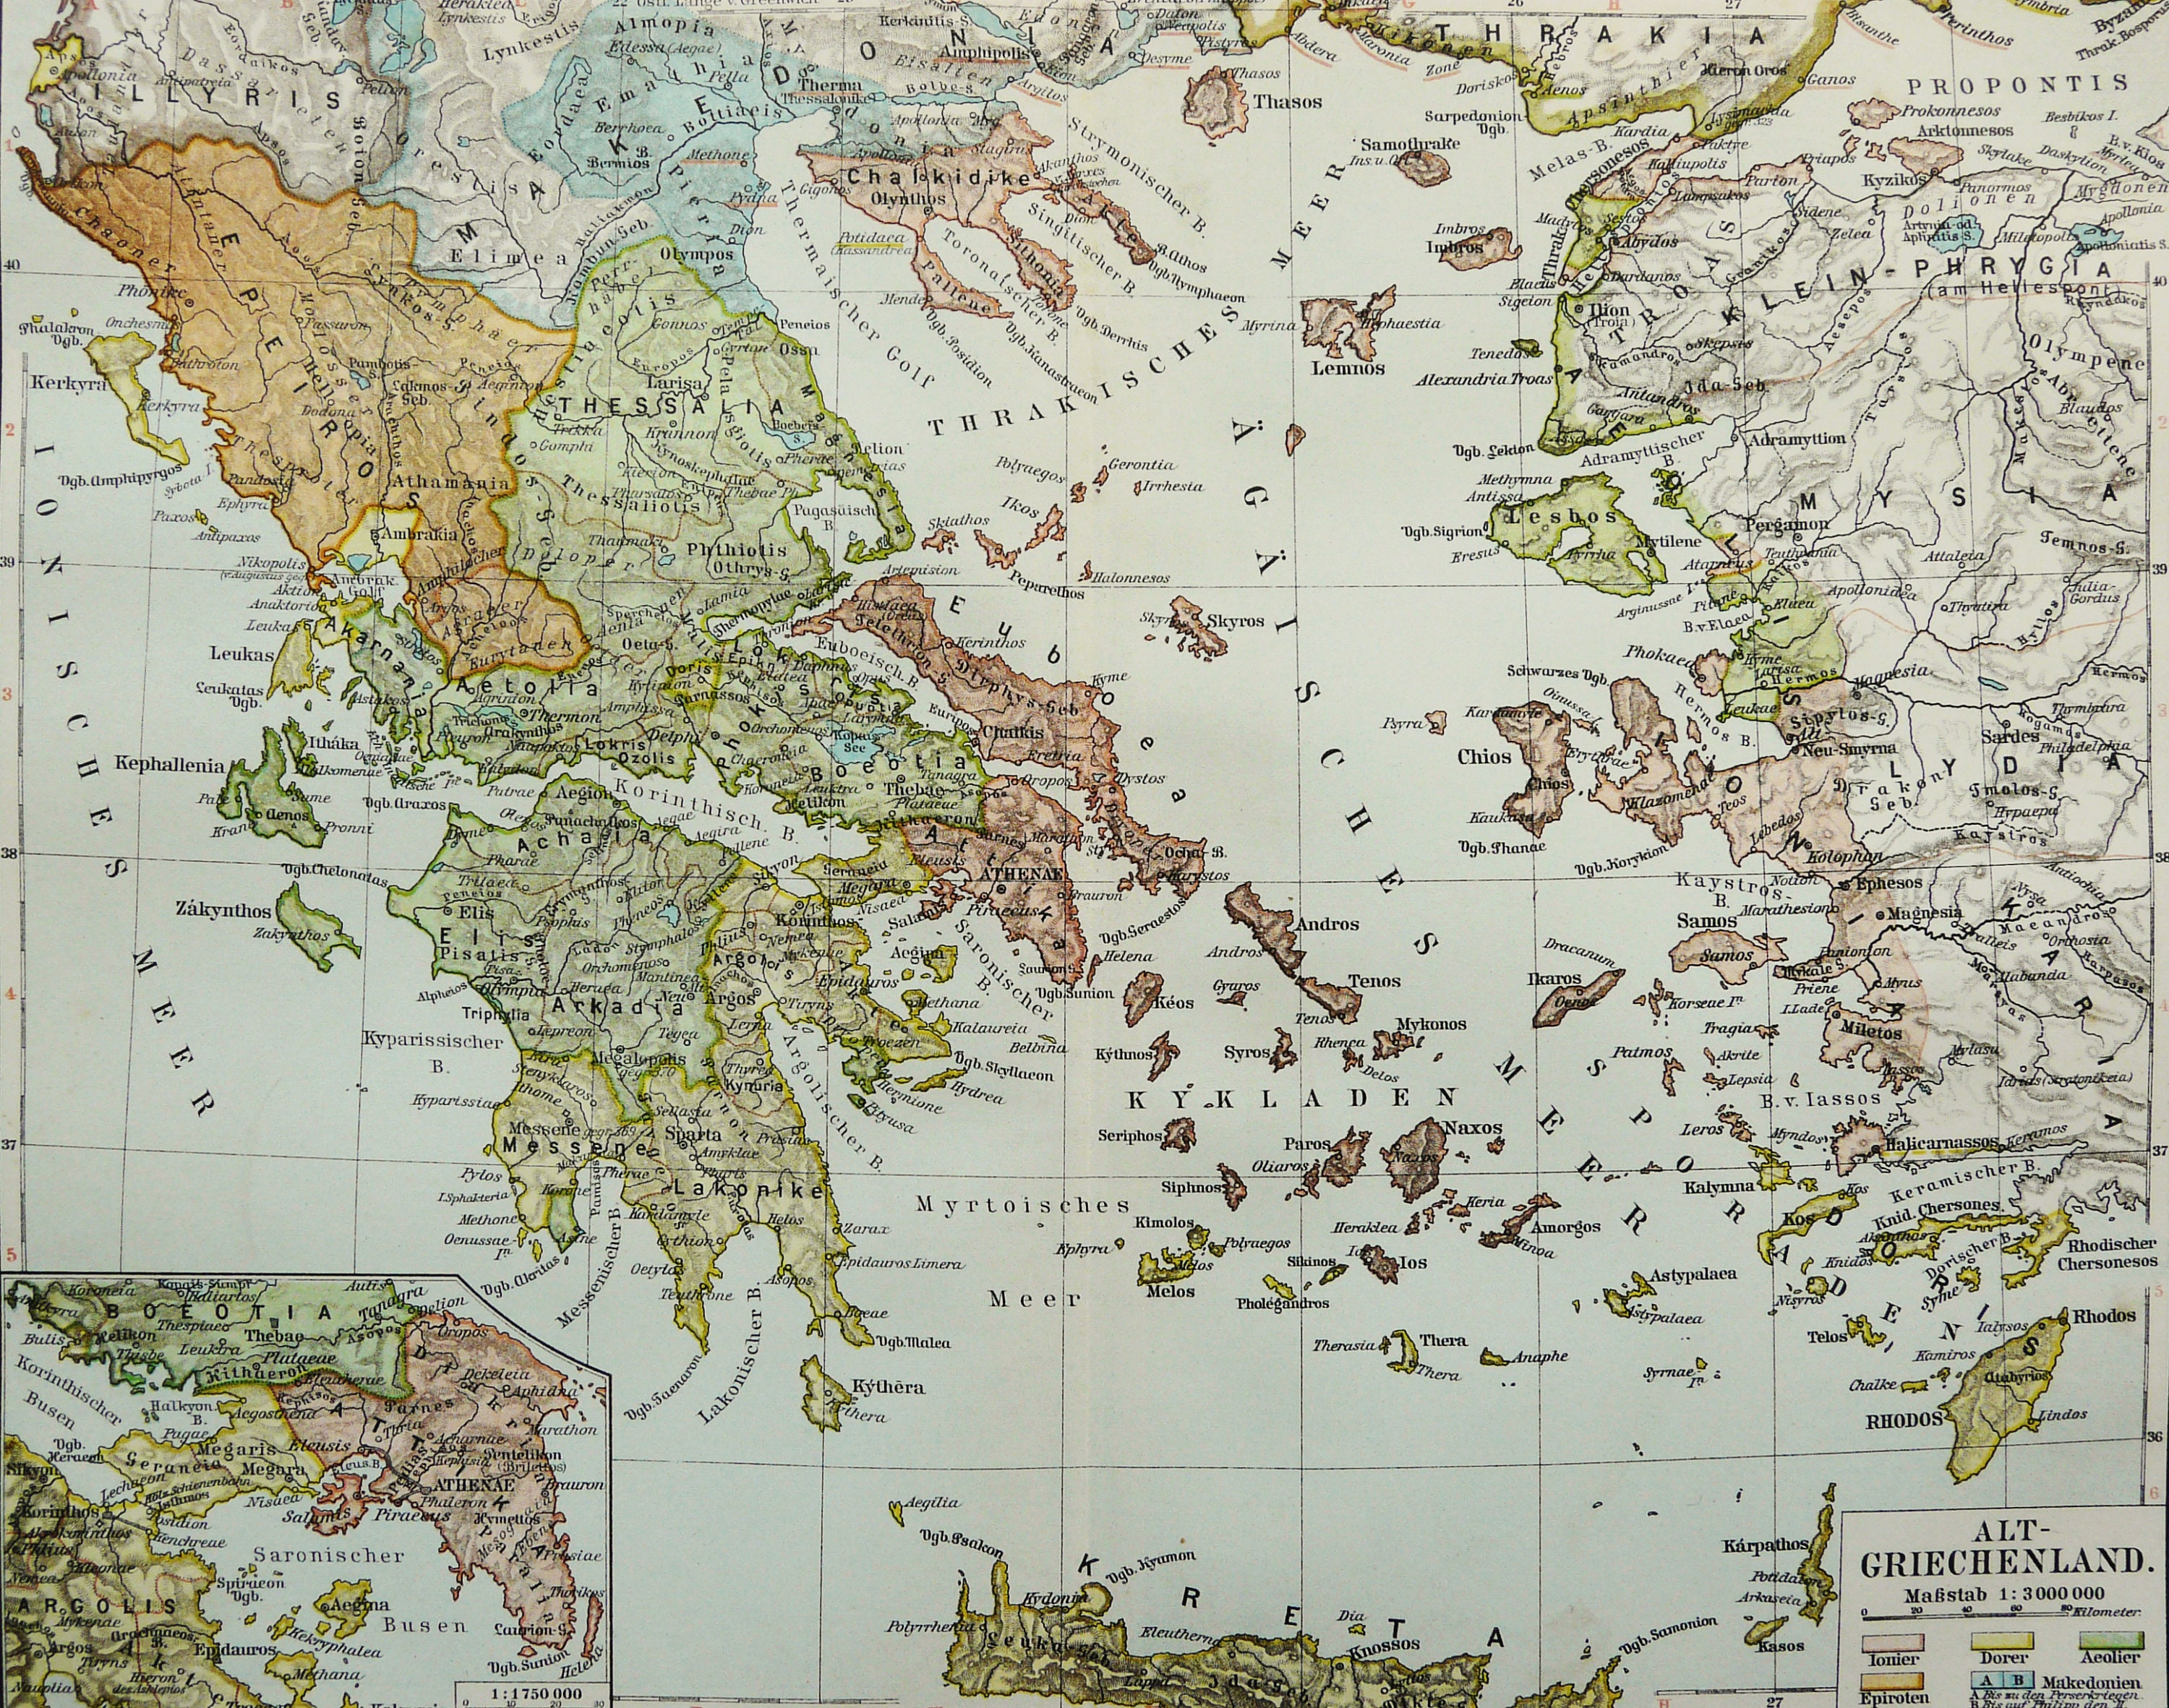 1897 Antica mappa dell'ANTICA GRECIA. Grecia classica. - Etsy Italia